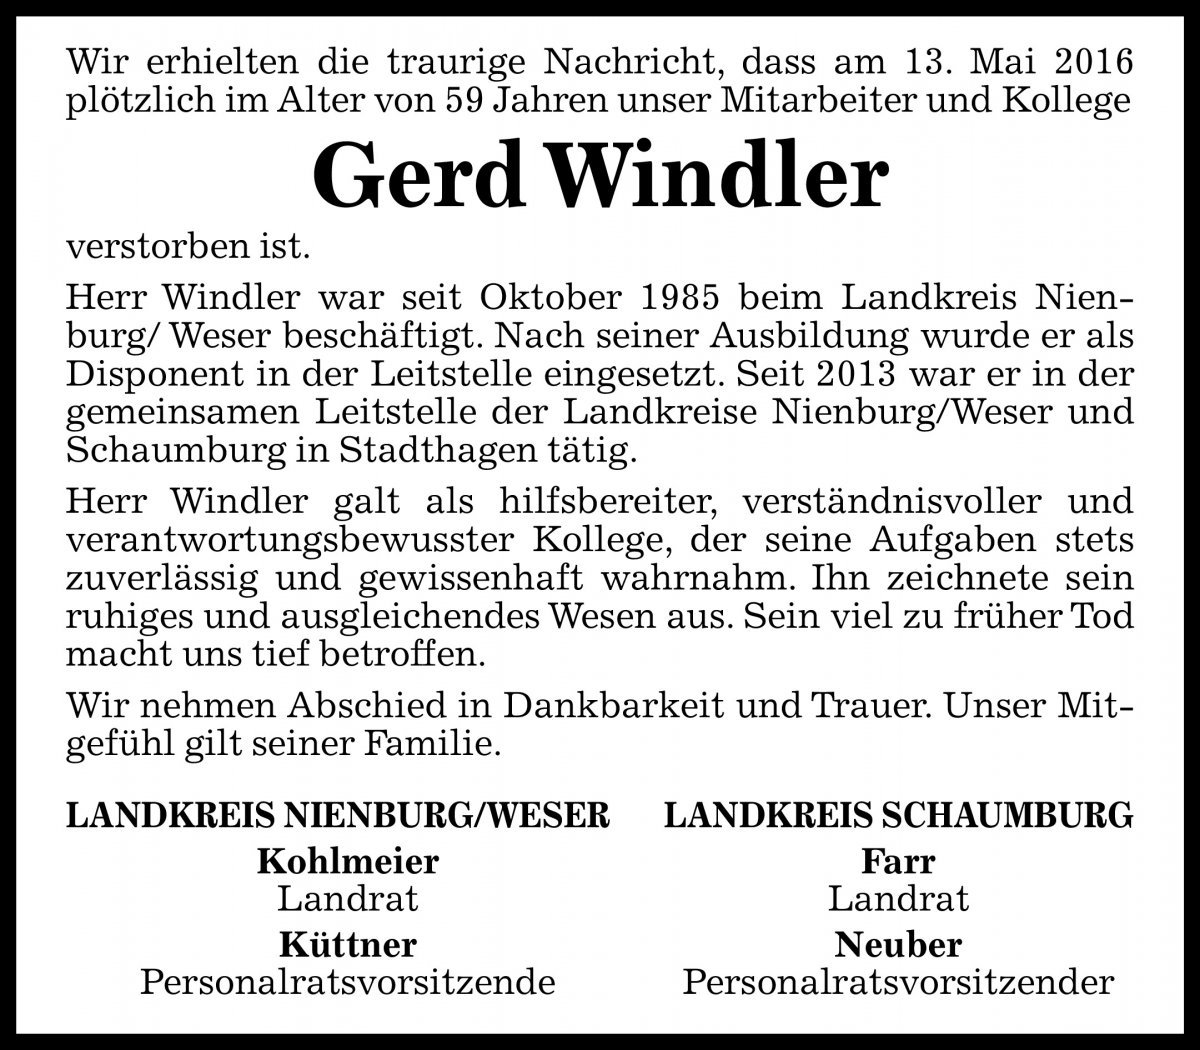 Werner Windler